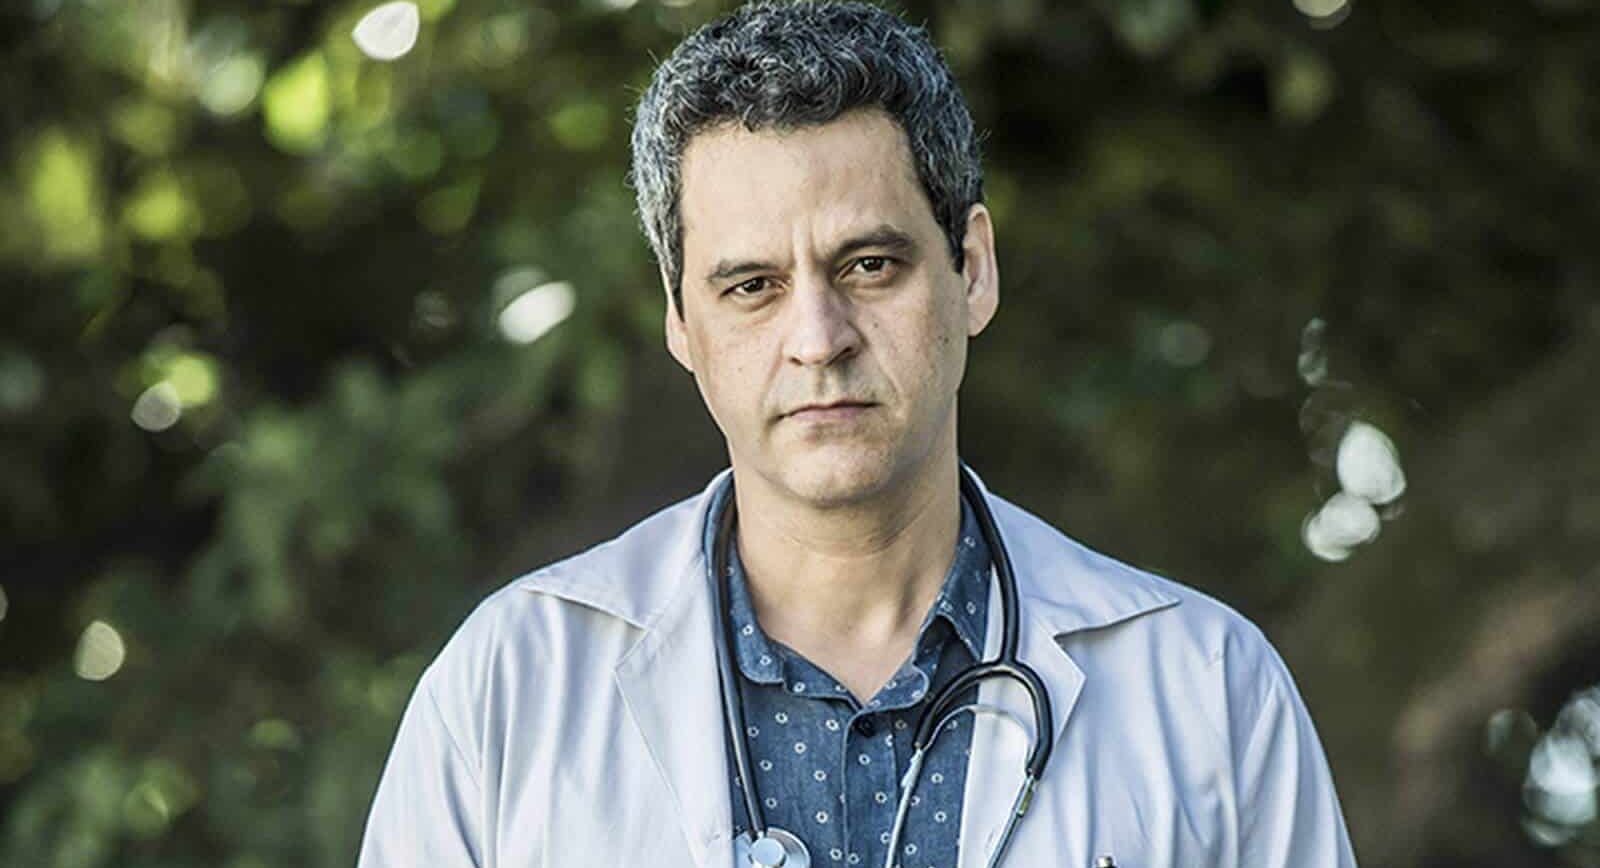 Sob Pressão: Personagem de Bruno Garcia vai dirigir hospital após assumir homossexualidade